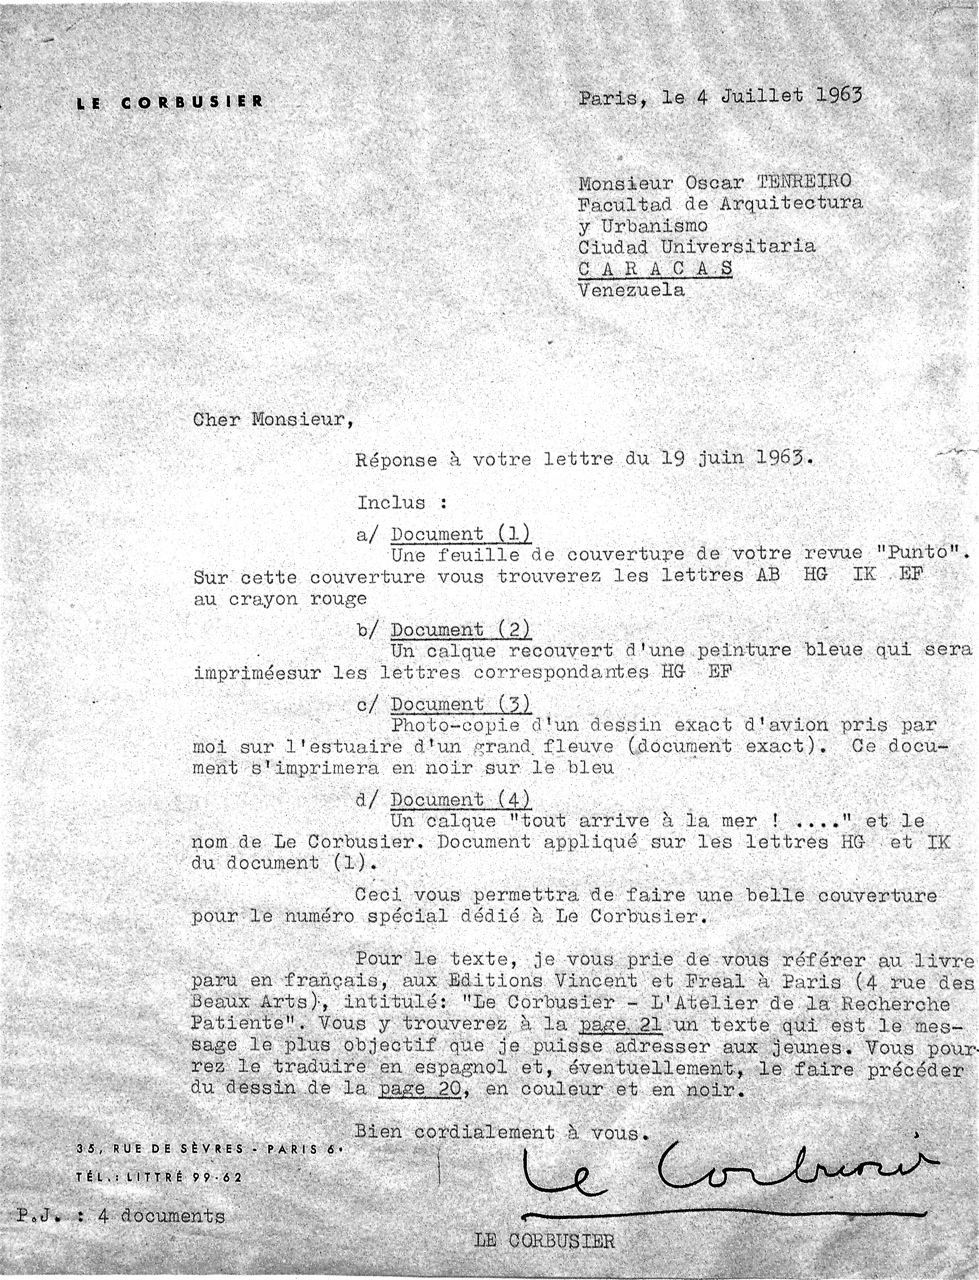 Carta respuesta de Le Corbusier con las instrucciones para el ensamblaje del dibujo